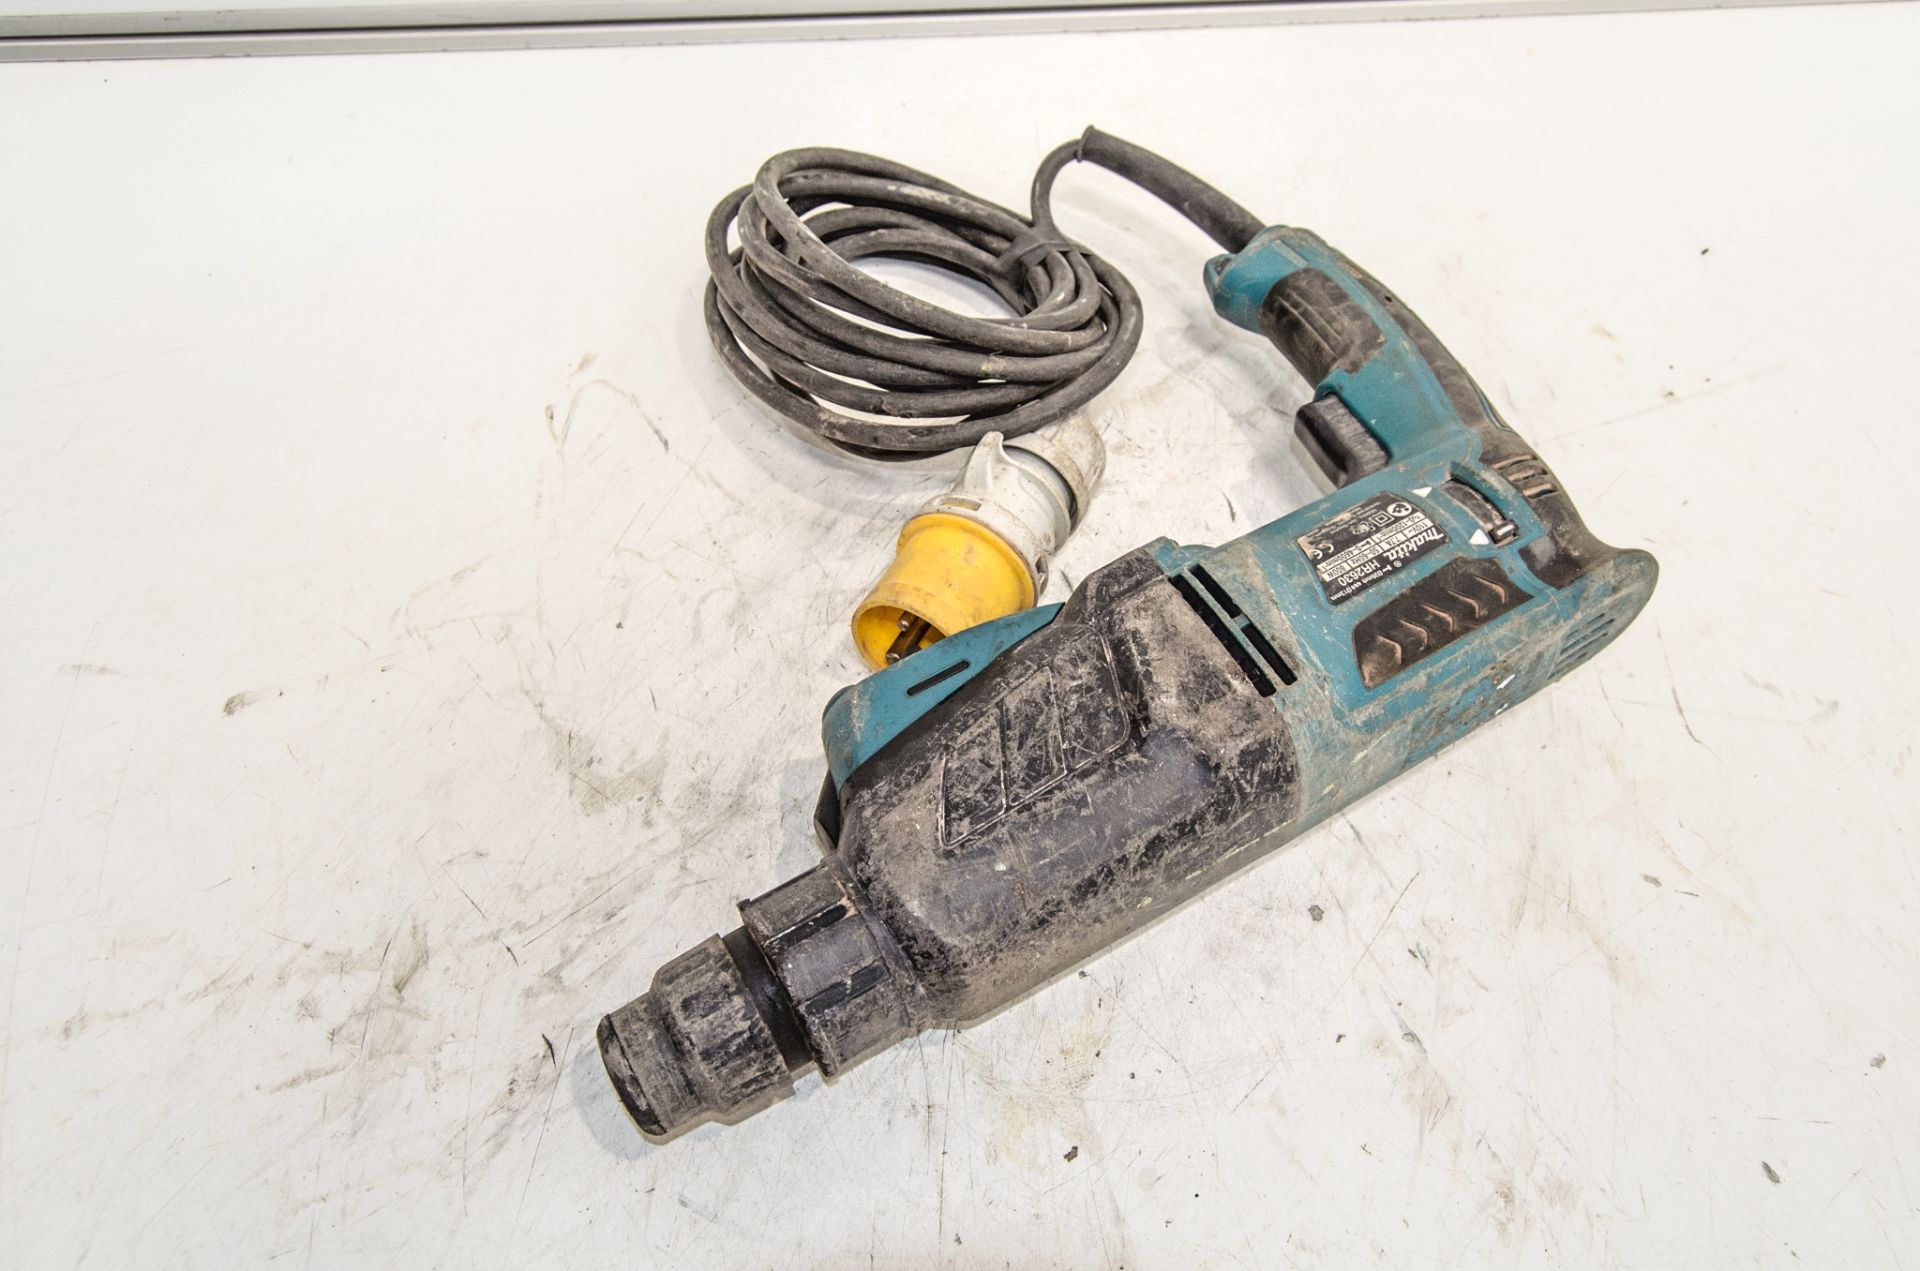 Makita HR2630 110v SDS rotary hammer drill - Image 2 of 2